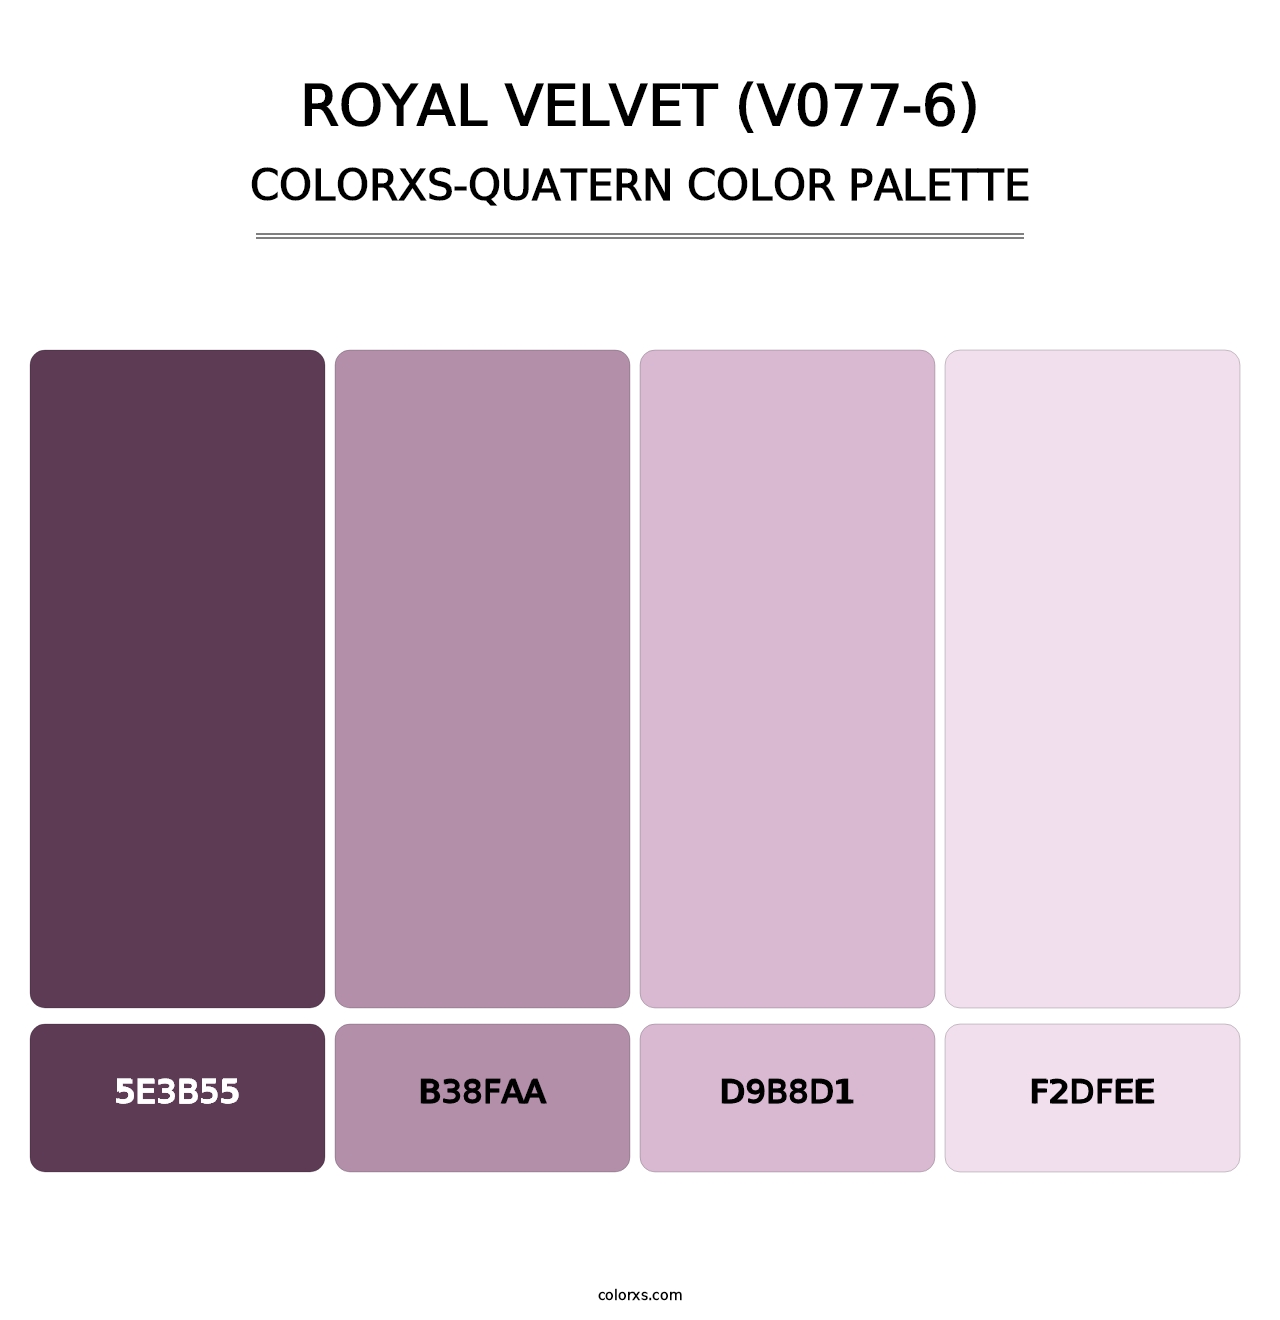 Royal Velvet (V077-6) - Colorxs Quatern Palette